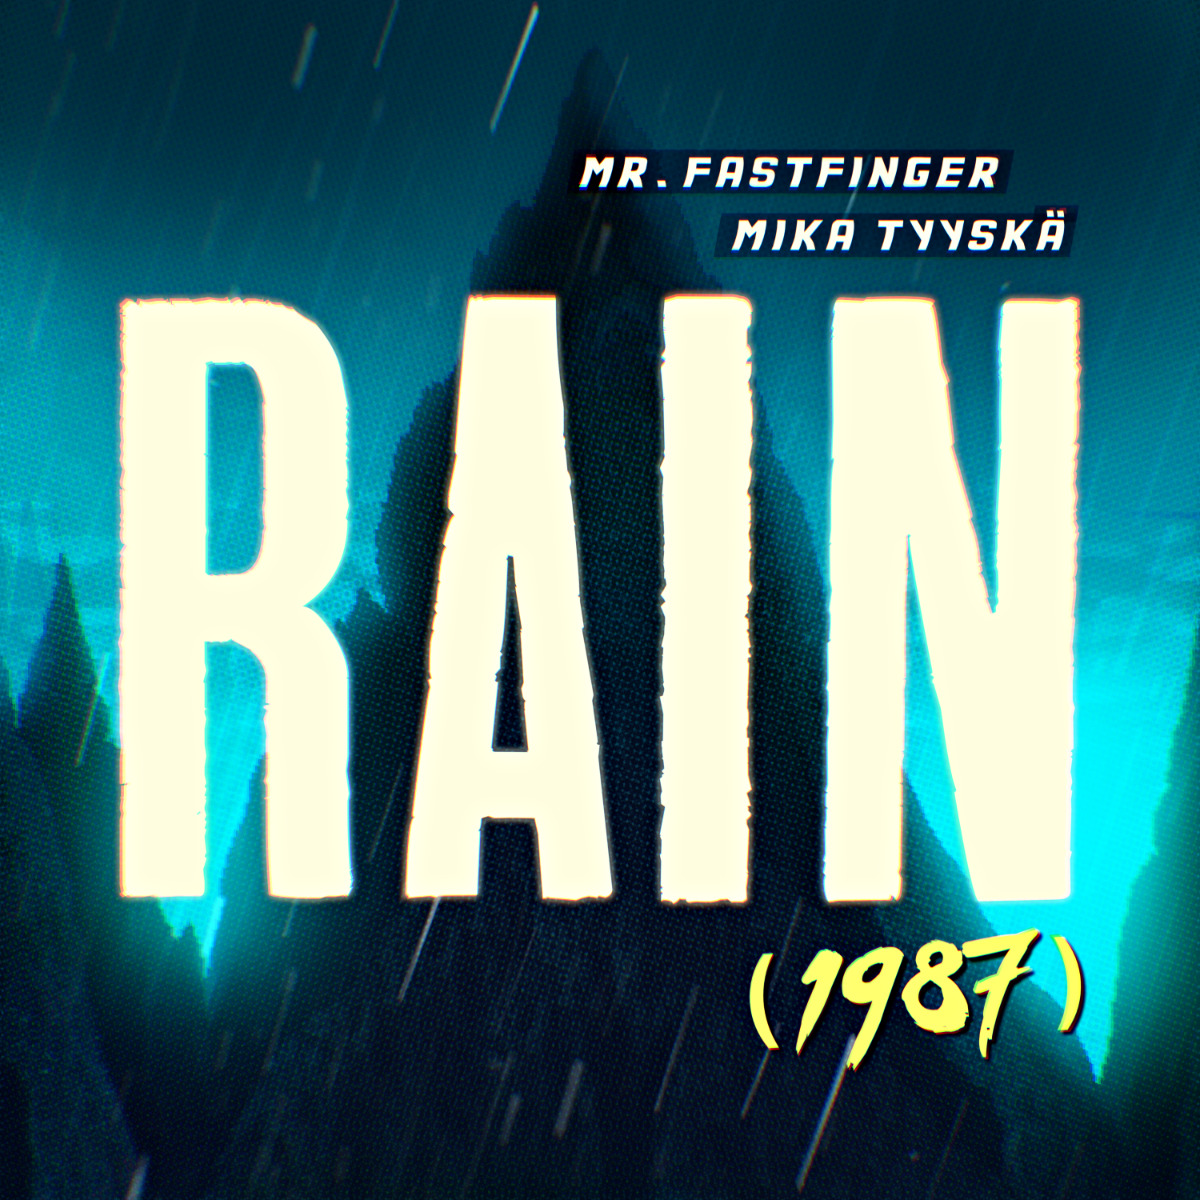 Mr. Fastfinger Rain 1987 single cover